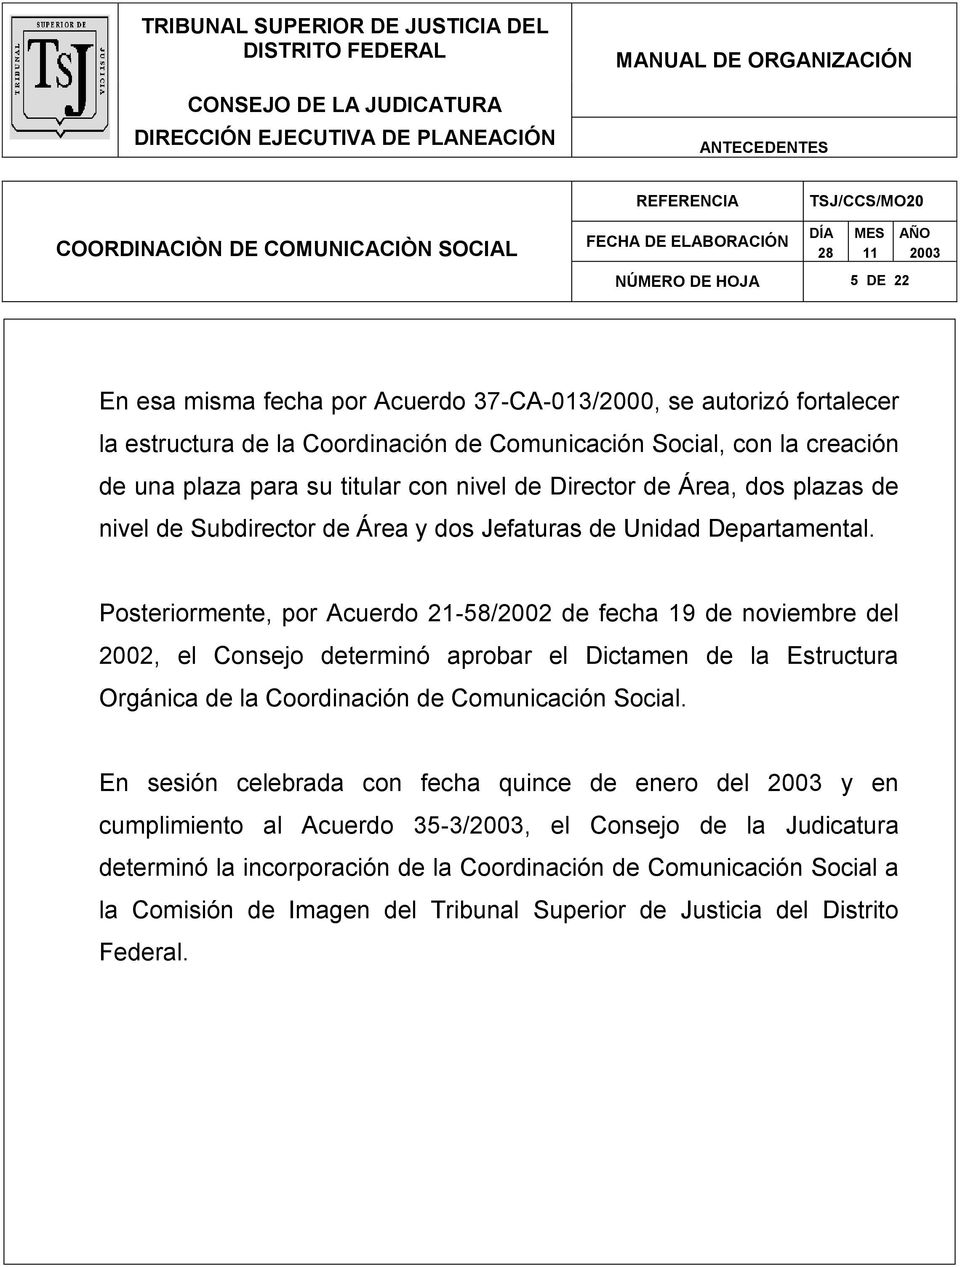 Posteriormente, por Acuerdo 21-58/2002 de fecha 1 de noviembre del 2002, el Consejo determinó aprobar el Dictamen de la Estructura Orgánica de la Coordinación de Comunicación Social.